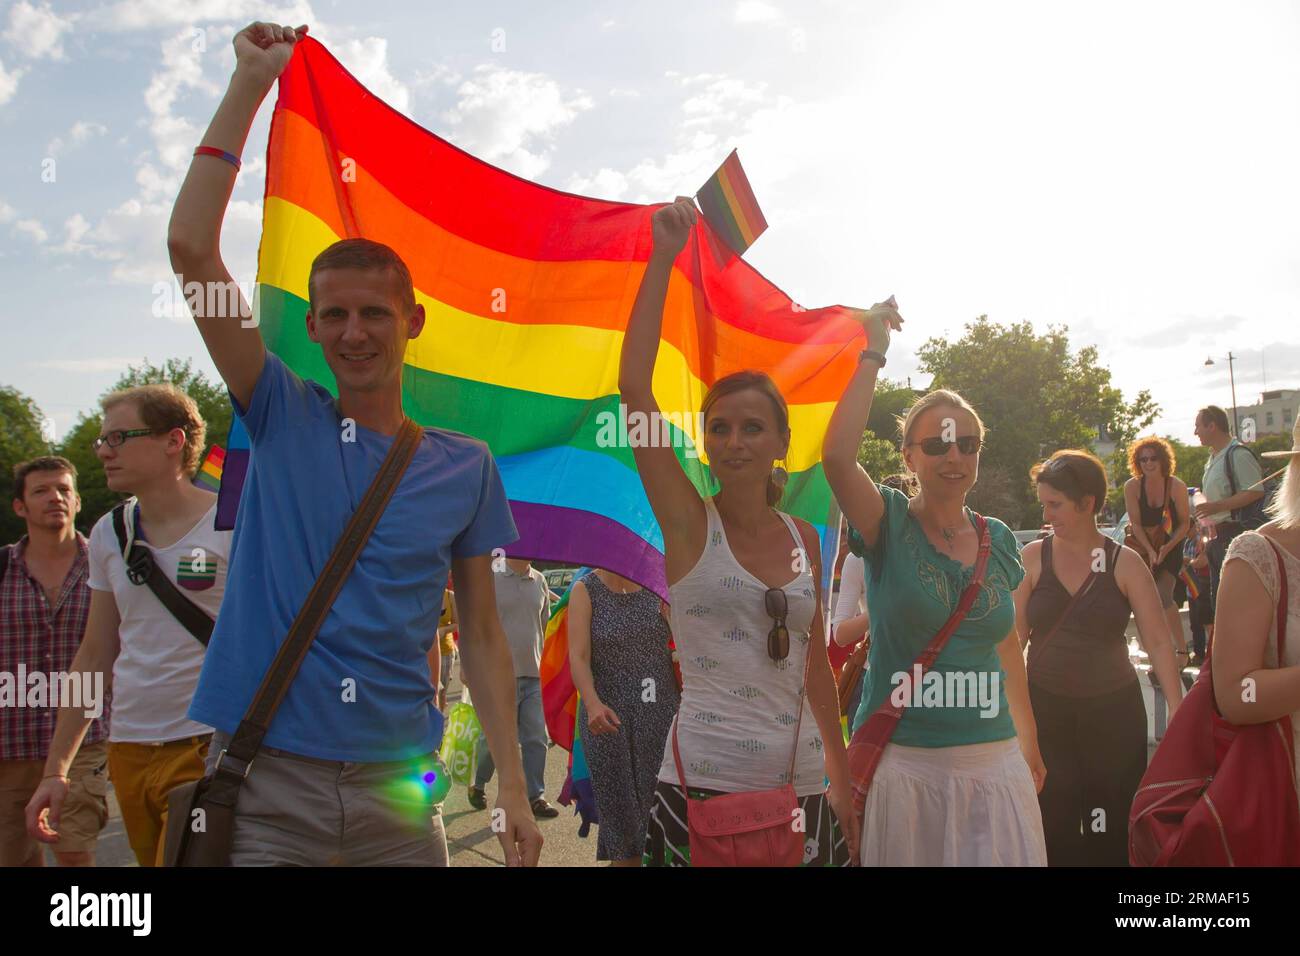 (140706) -- BUDAPEST, 5. Juli 2014 (Xinhua) -- Teilnehmer des Gay Pride Parade march quer durch die Stadt in Budapest, Ungarn, 5. Juli 2014. Das Thema der Parade war Budapest Pride: 365 , was bedeutet, dass die Teilnehmer das ganze Jahr hindurch um Akzeptanz strebten, nicht nur an diesem Tag. Verschiedene Gruppen, die behaupteten, Familienwerte zu vertreten, hielten Gegendemonstrationen entlang der Parade ab. Die Polizei verhaftete zwei Demonstranten. (Xinhua/Attila Volgyi) (ctt) UNGARN-BUDAPEST-GAY PRIDE Parade PUBLICATIONxNOTxINxCHN Budapest 5. Juli 2014 XINHUA Teilnehmer des Gay Pride Parade March quer durch die Stadt in Stockfoto